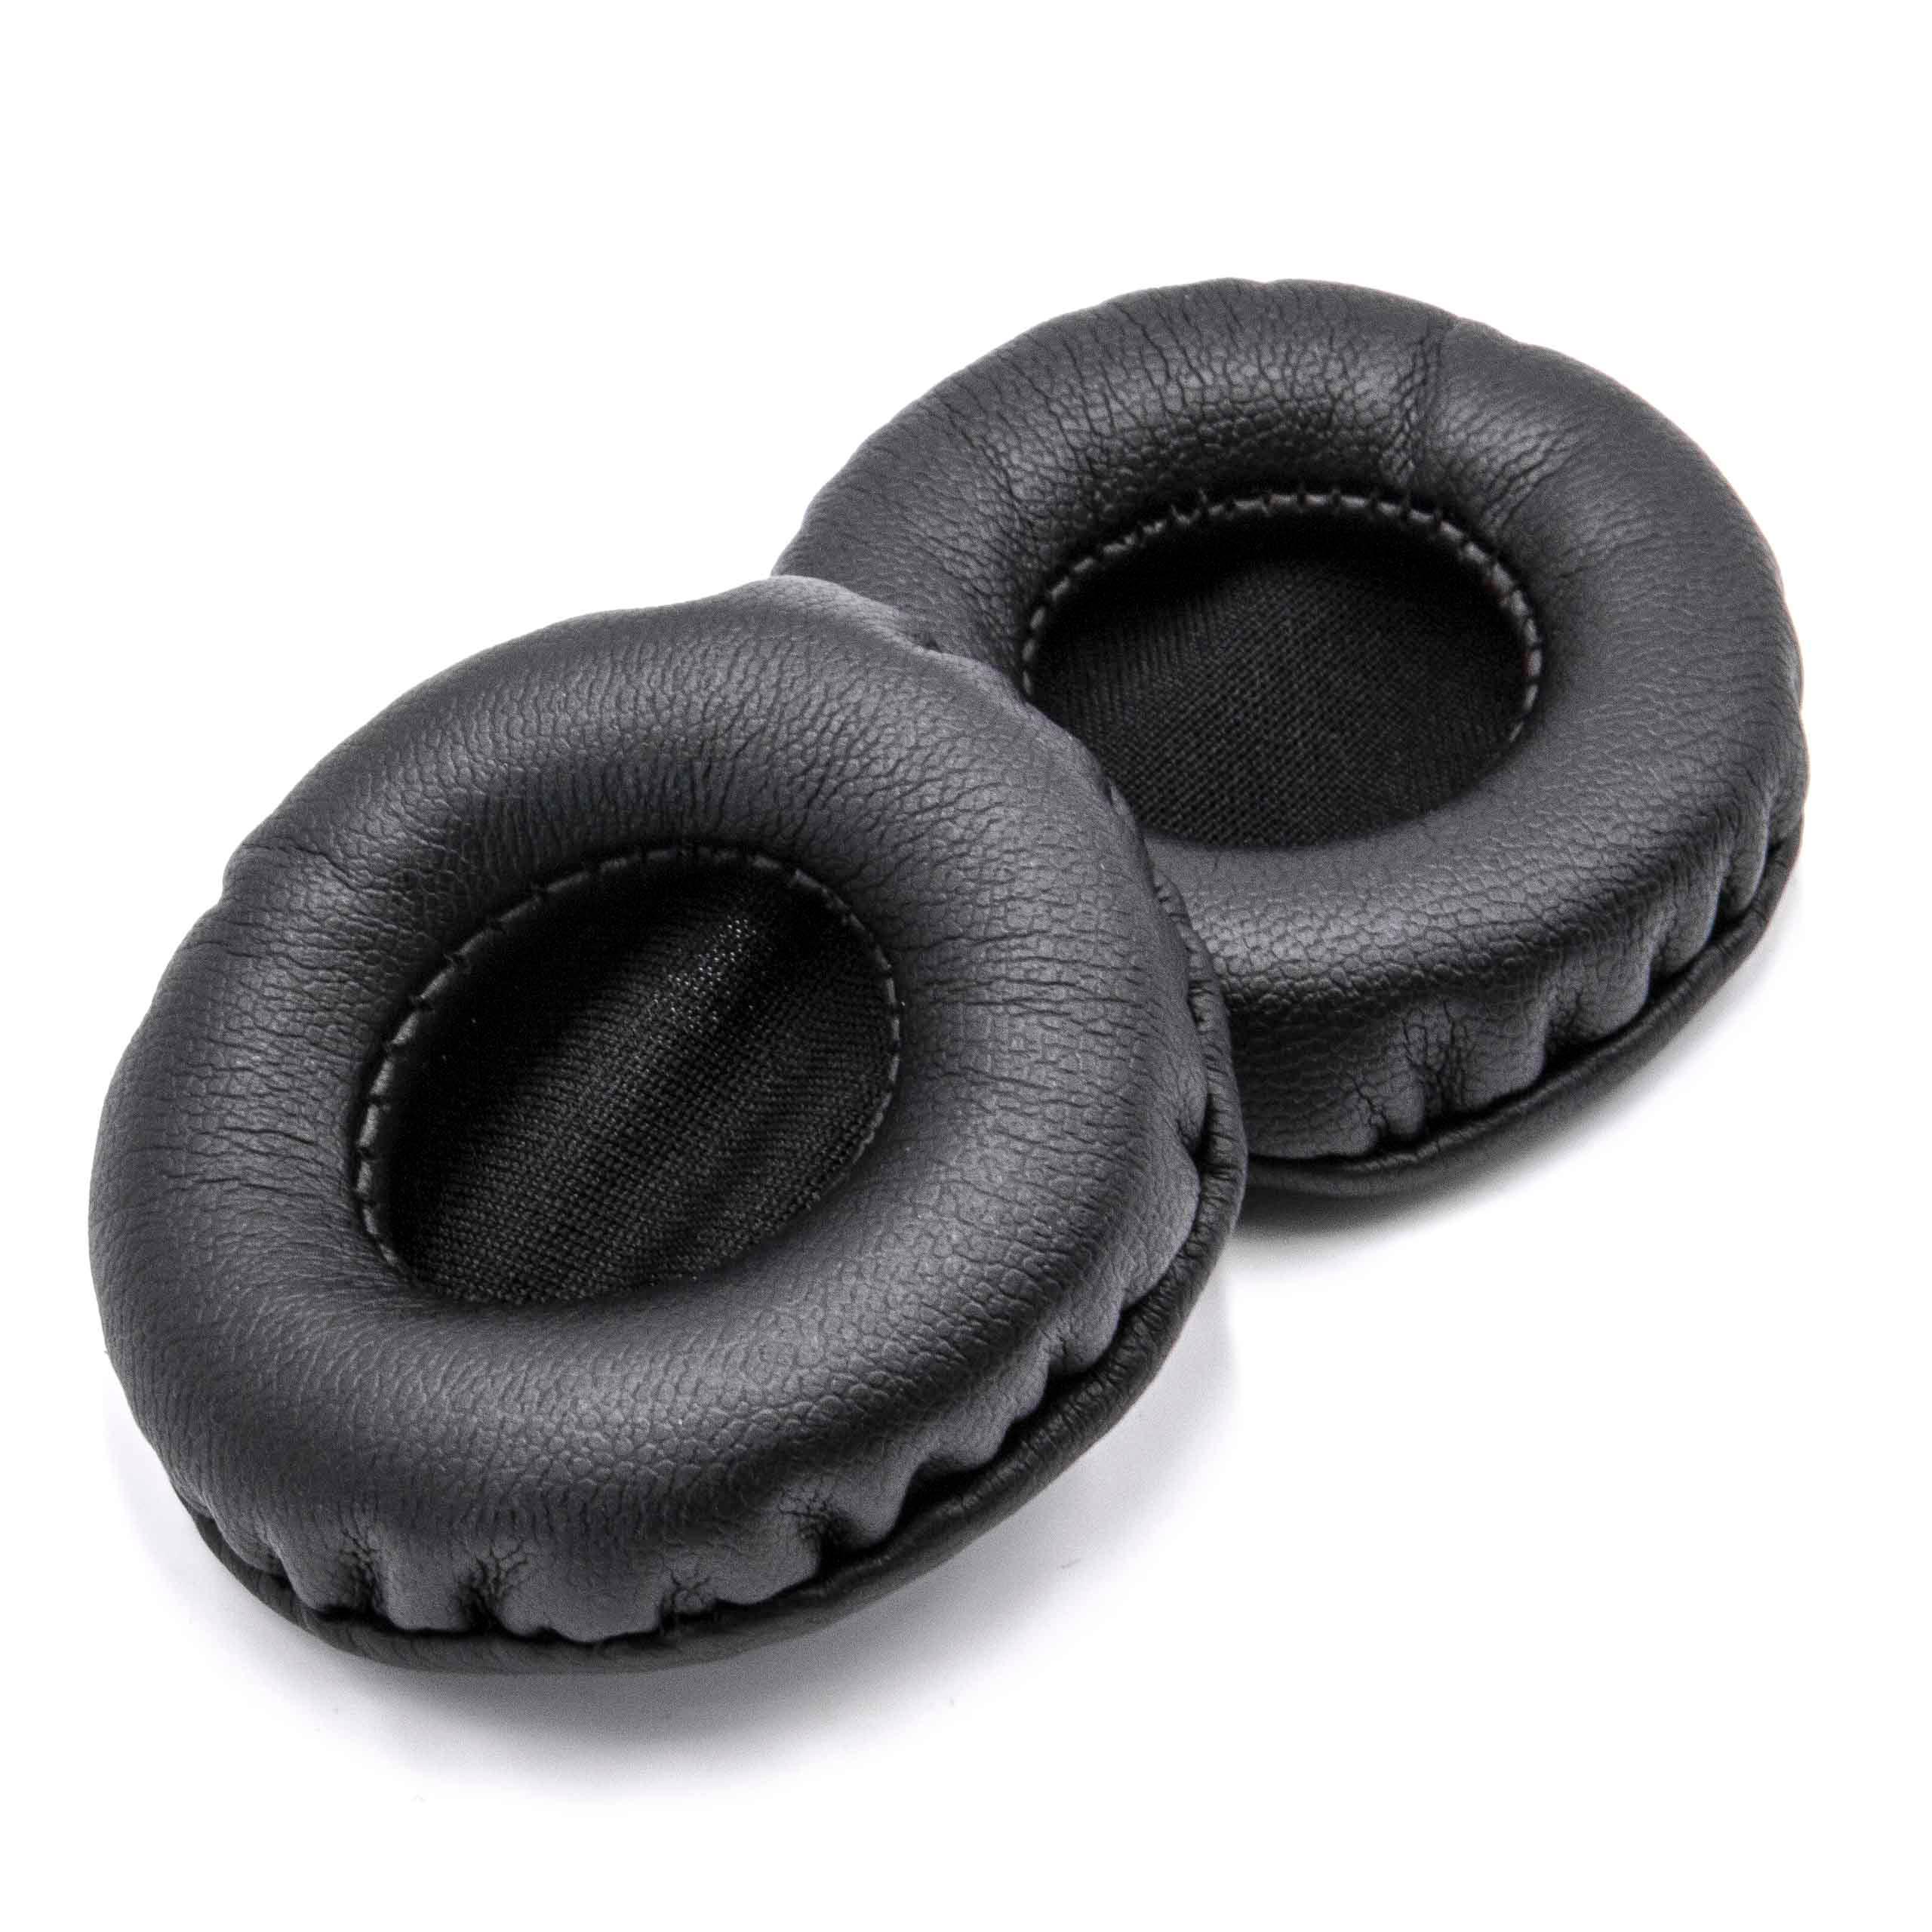 2x 1 paio di cuscinetti - poliuretano, 5 cm diametro esterno, nero